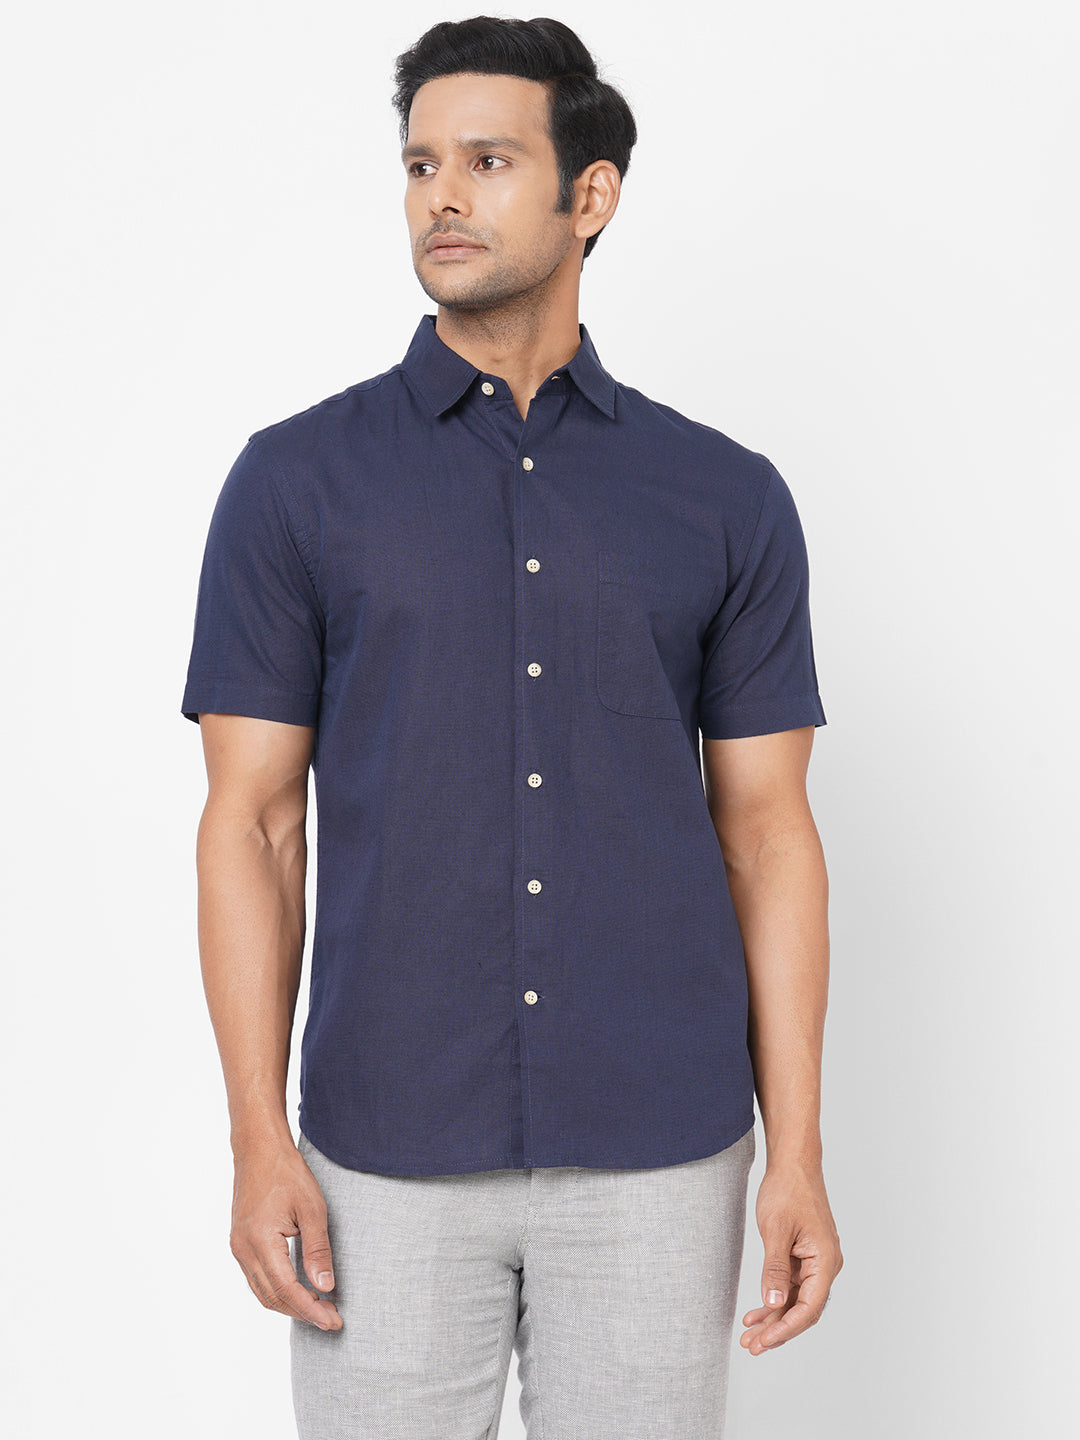 Men's Navy Linen Cotton Regular Fit Short Sleeve Shirt